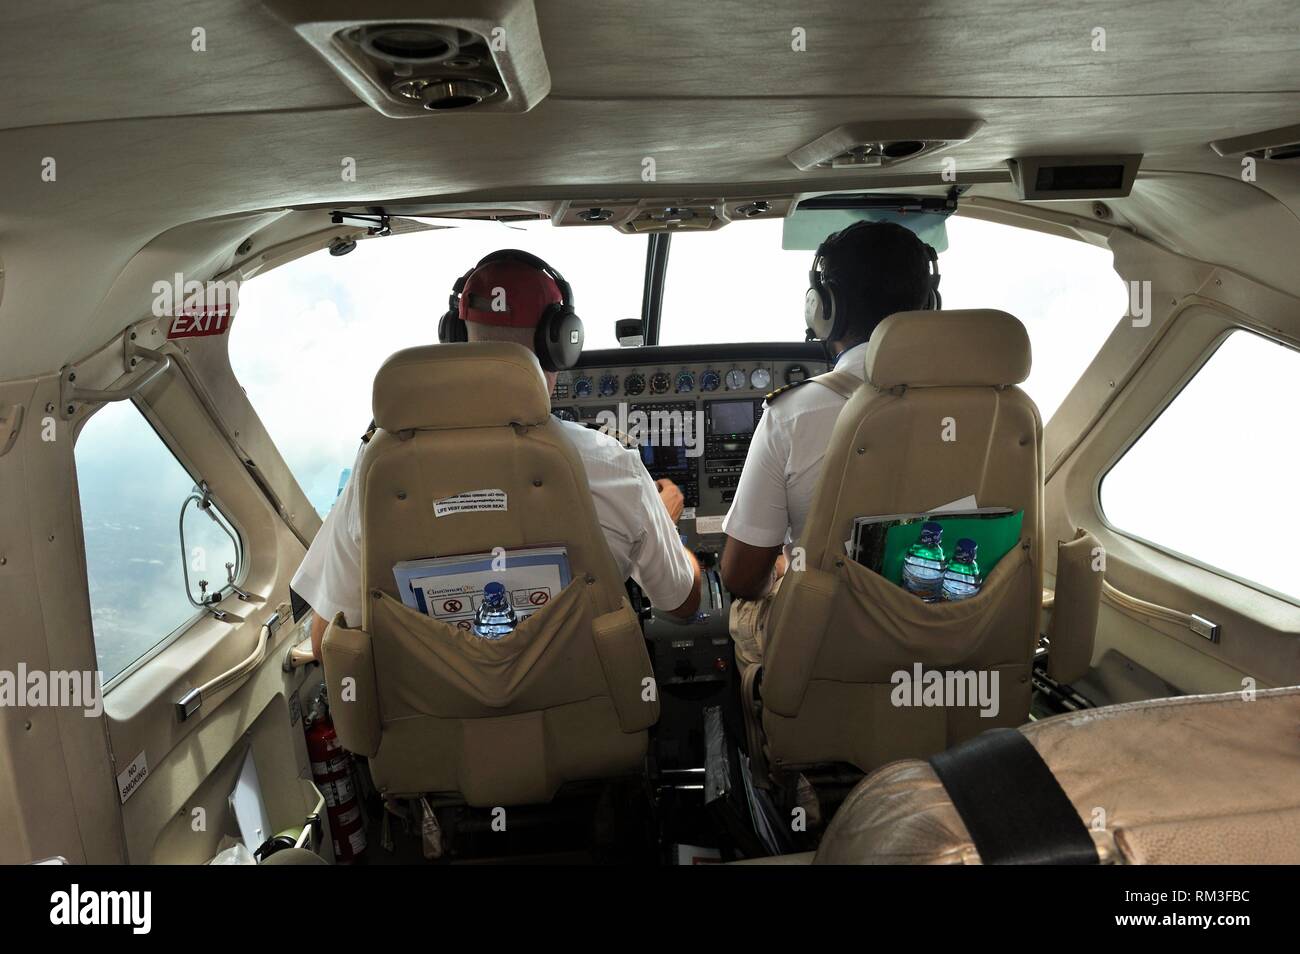 De l'hydravion de la cannelle du Sri Lanka, de l'air service de taxi aérien, au départ de Colombo, Sri Lanka, Inde, Asie du Sud. Banque D'Images